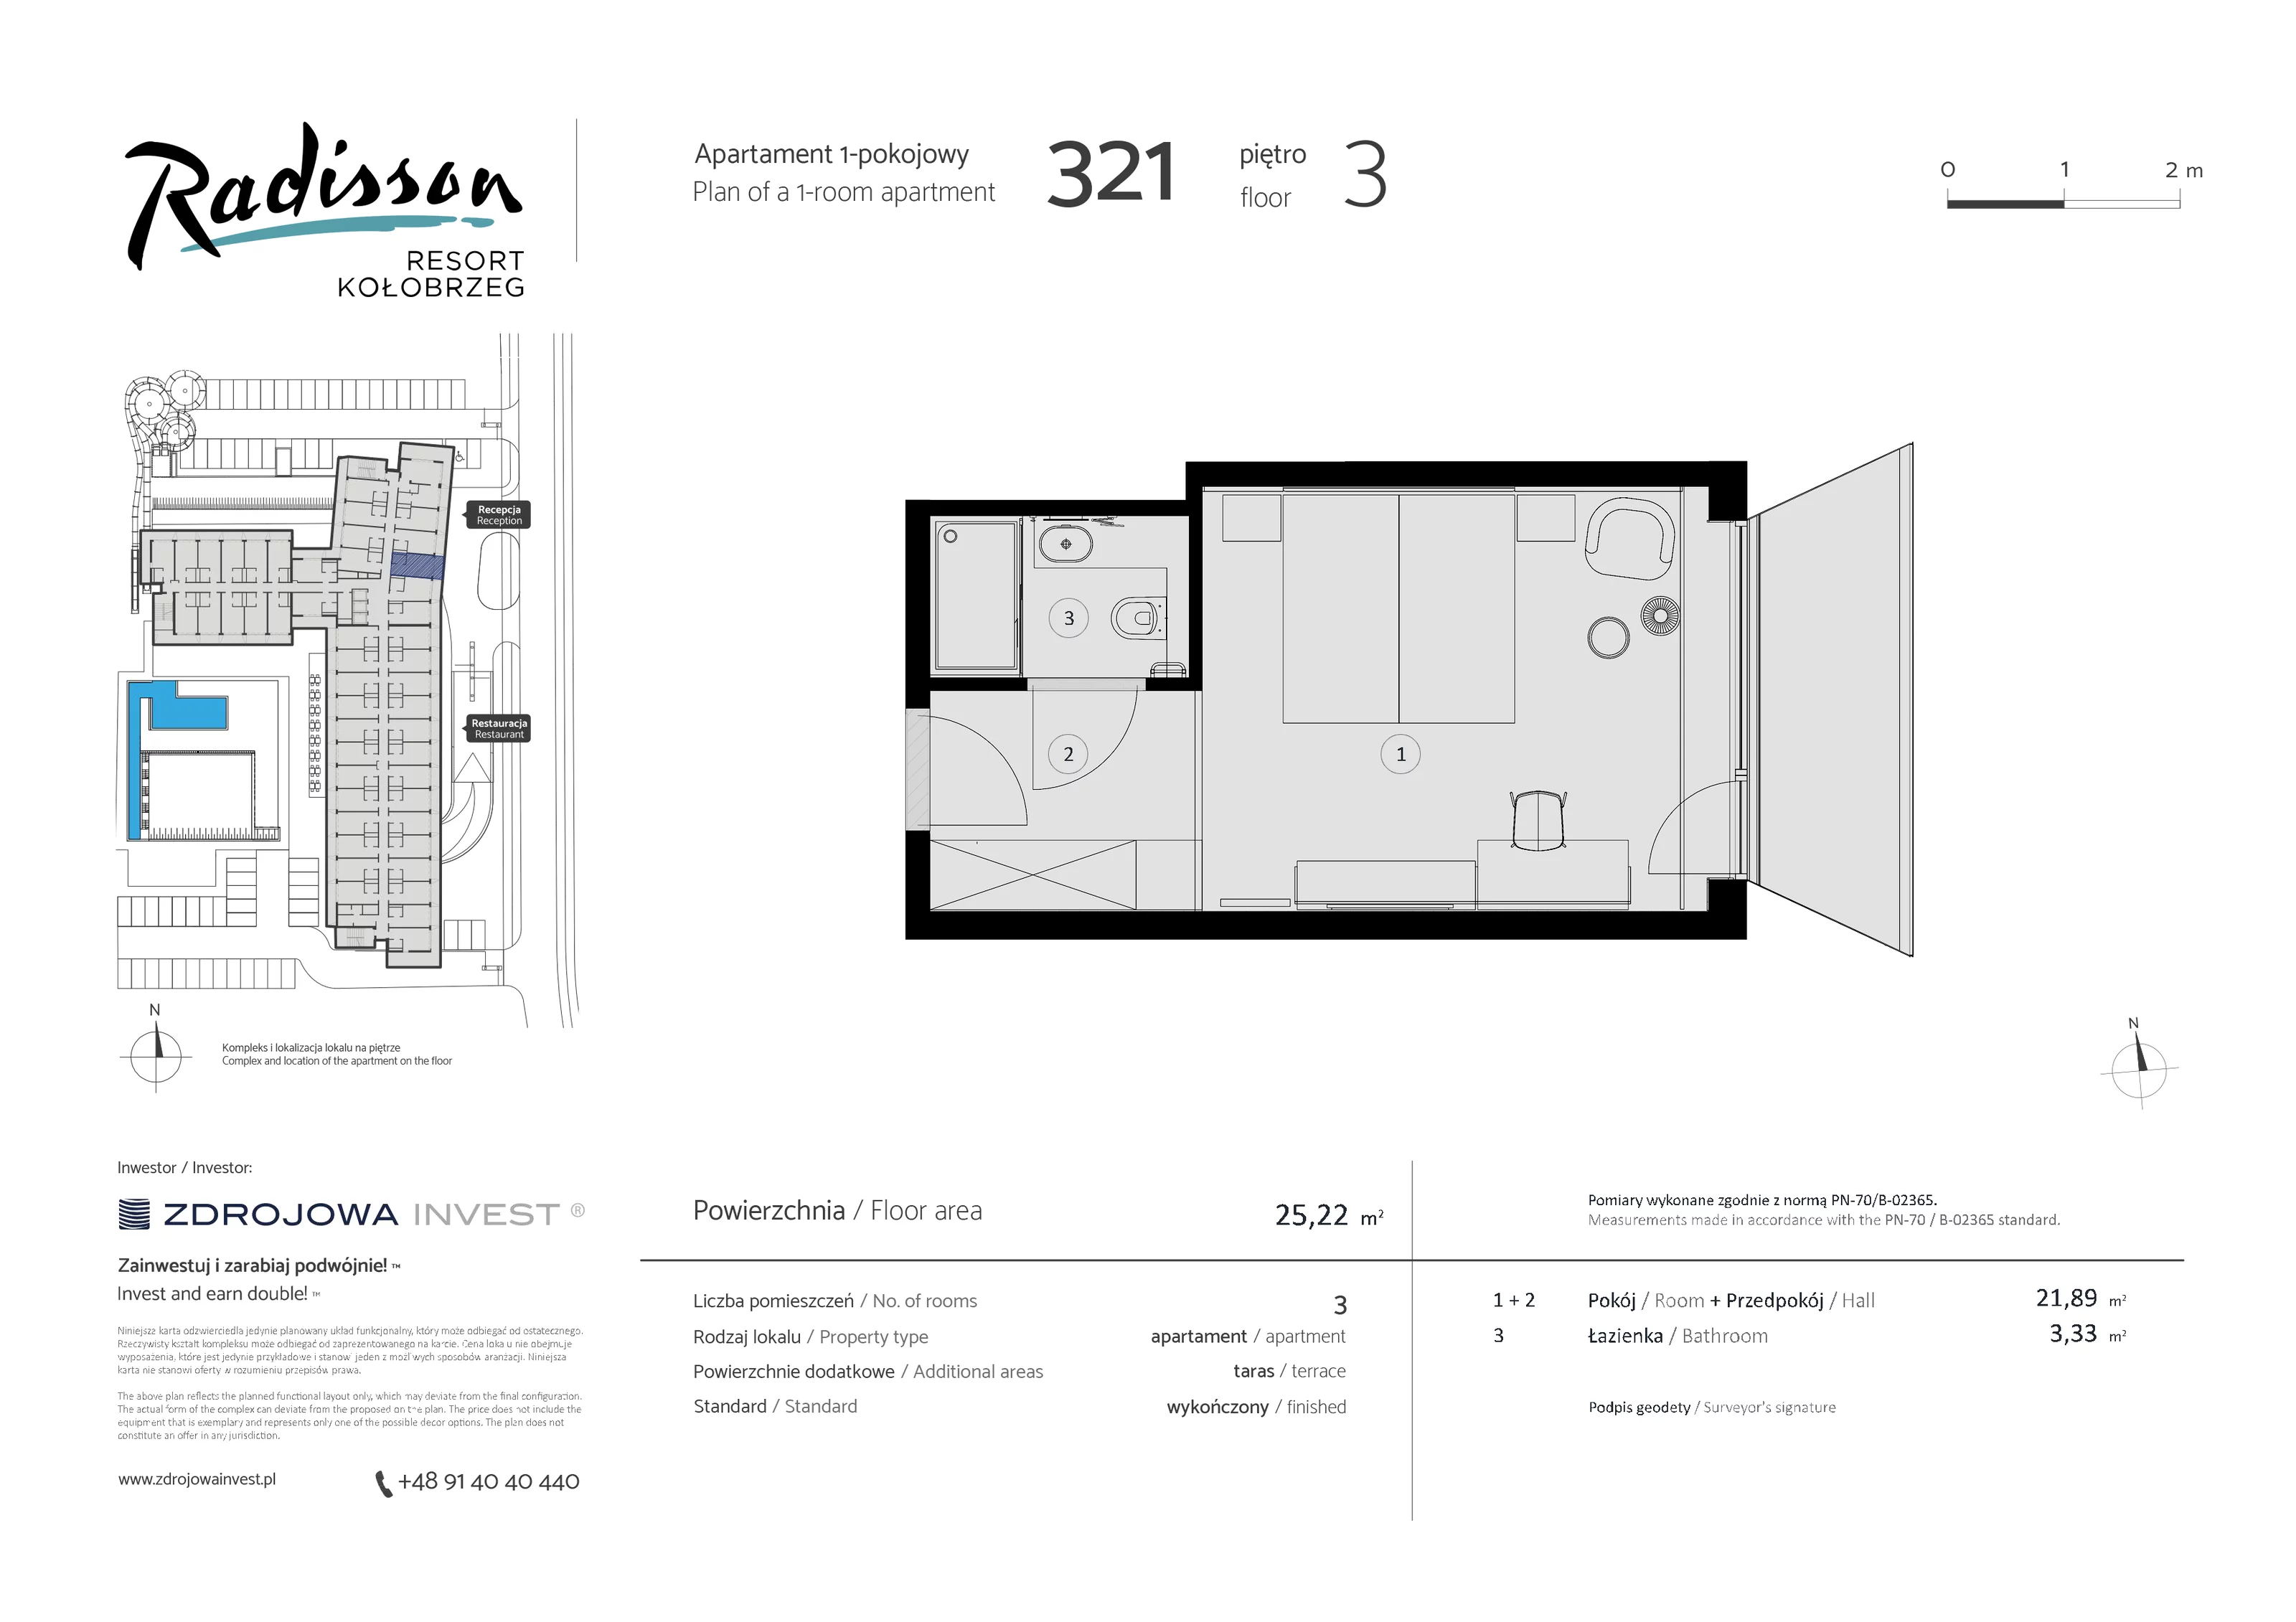 Apartament inwestycyjny 25,22 m², piętro 3, oferta nr 321, Radisson Resort Kołobrzeg, Kołobrzeg, ul. Morawskiego 10